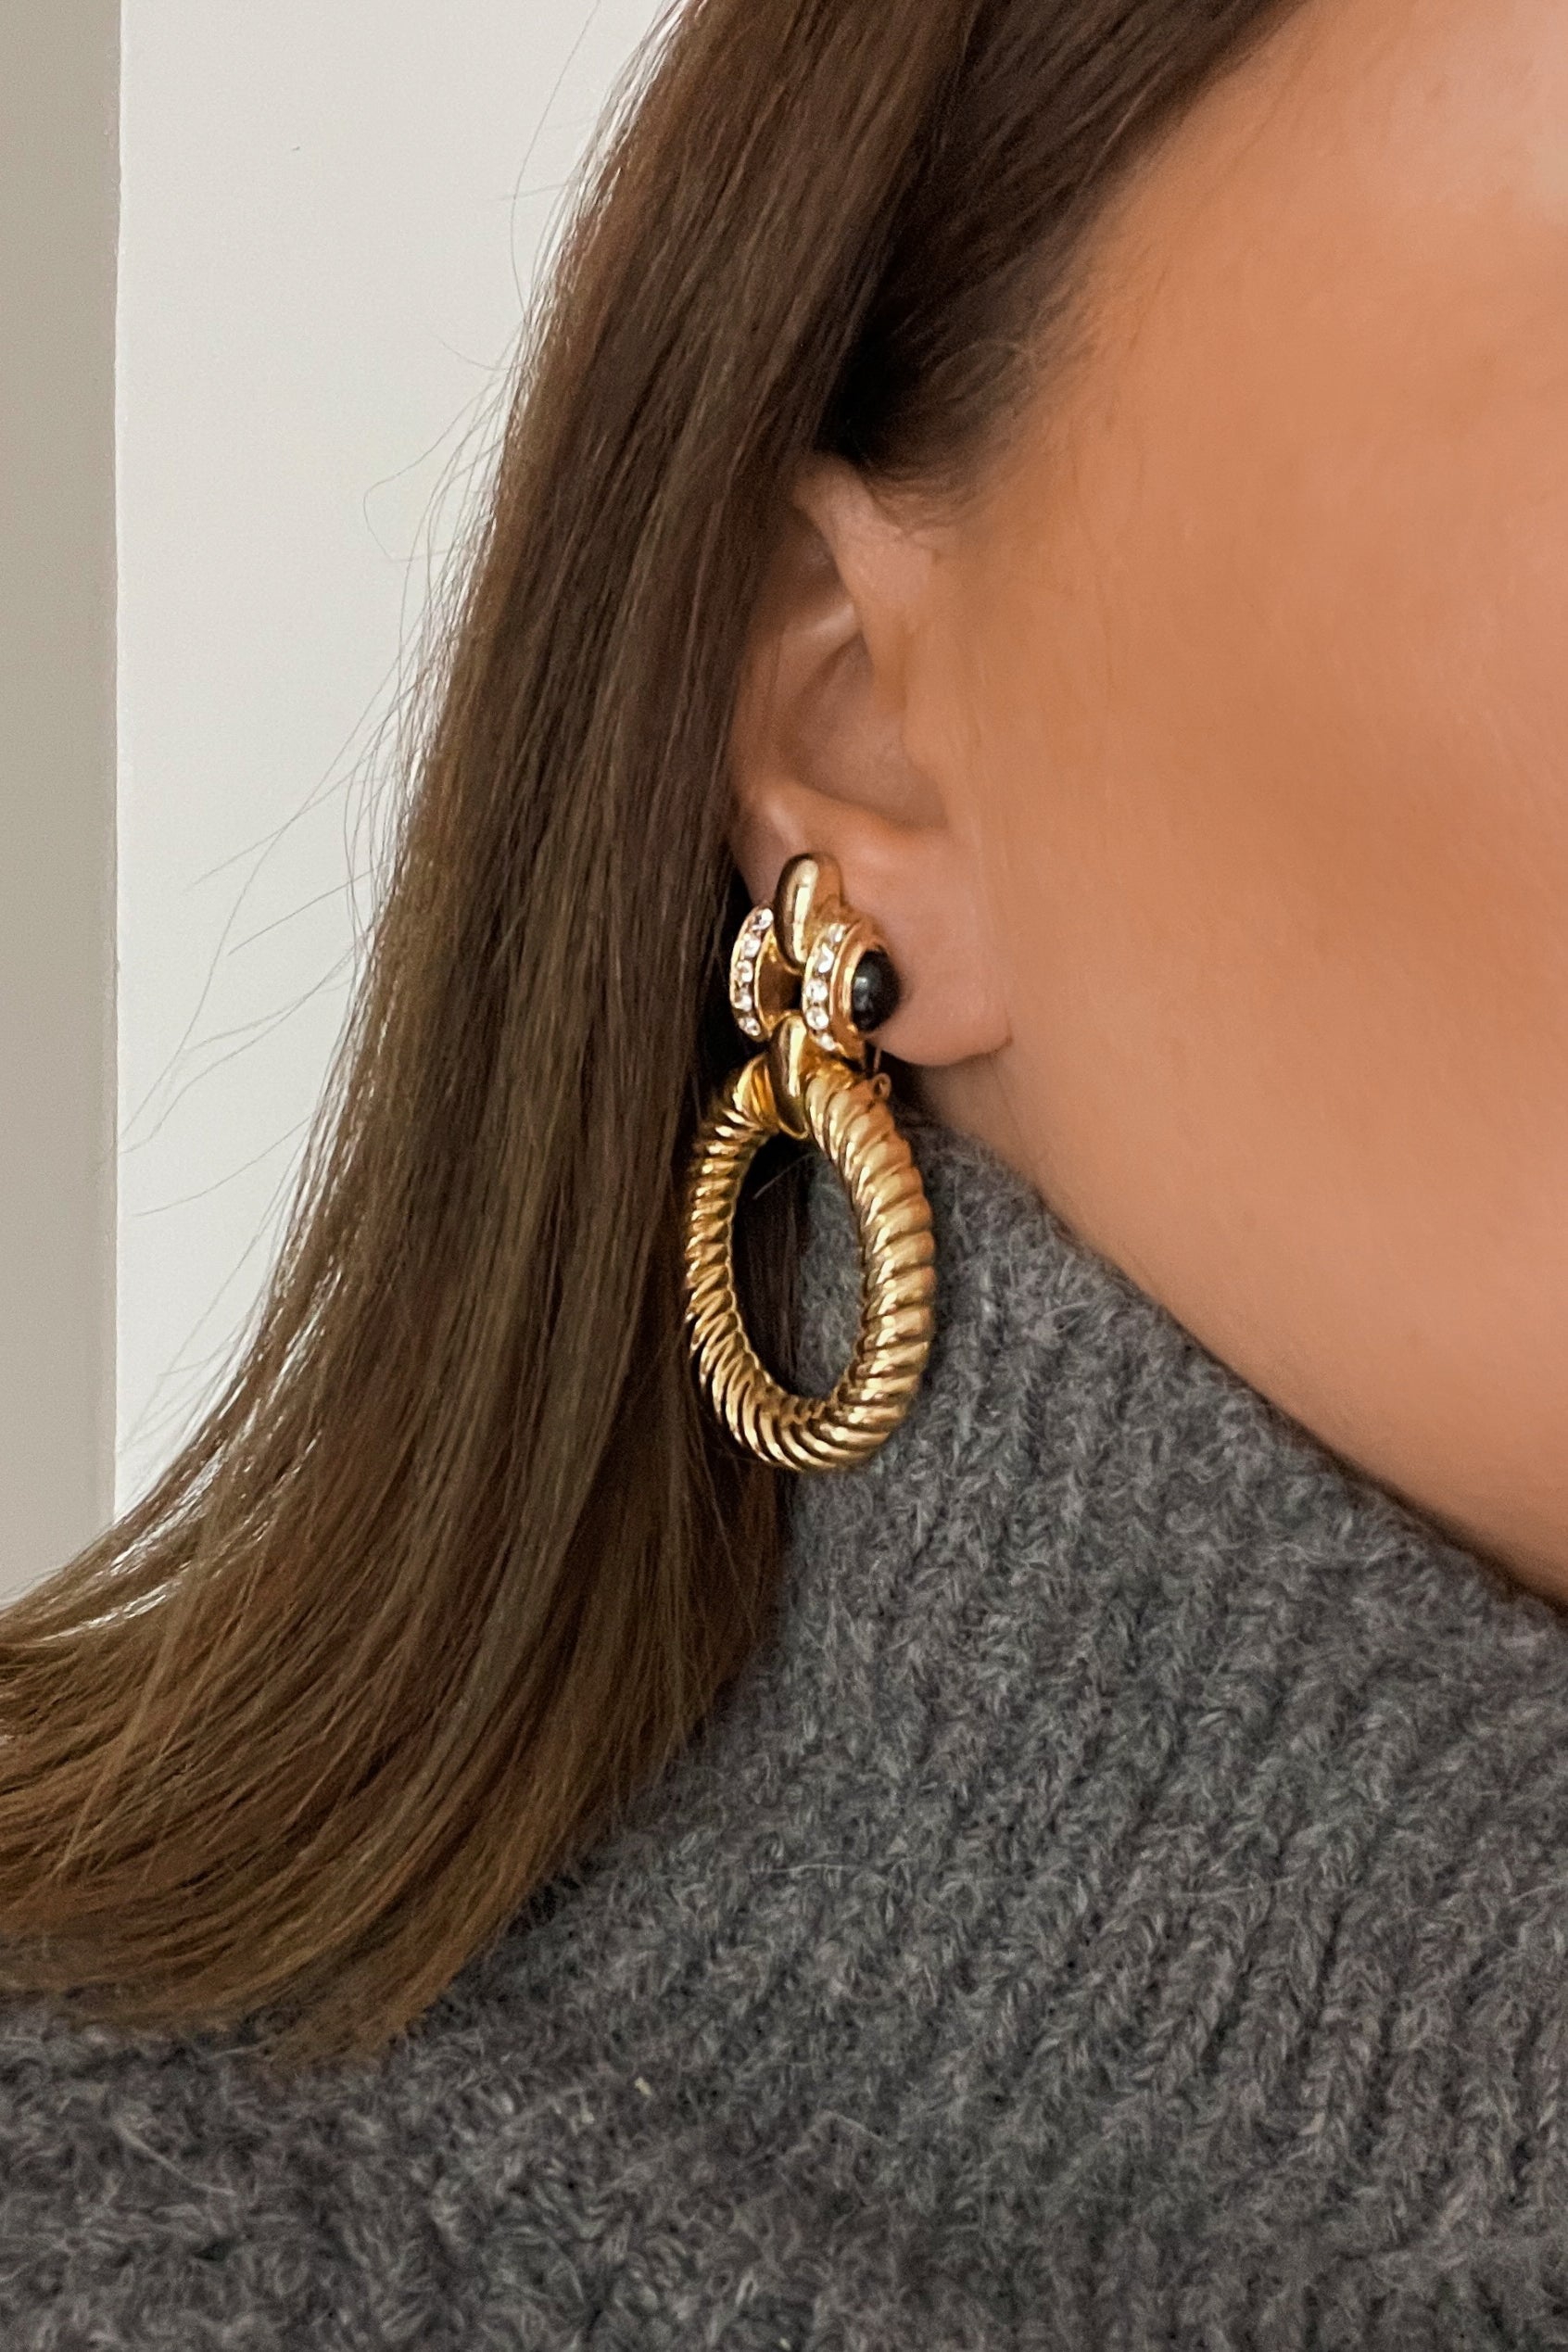 Perla (Vintage) Earrings - Boutique Minimaliste has waterproof, durable, elegant and vintage inspired jewelry